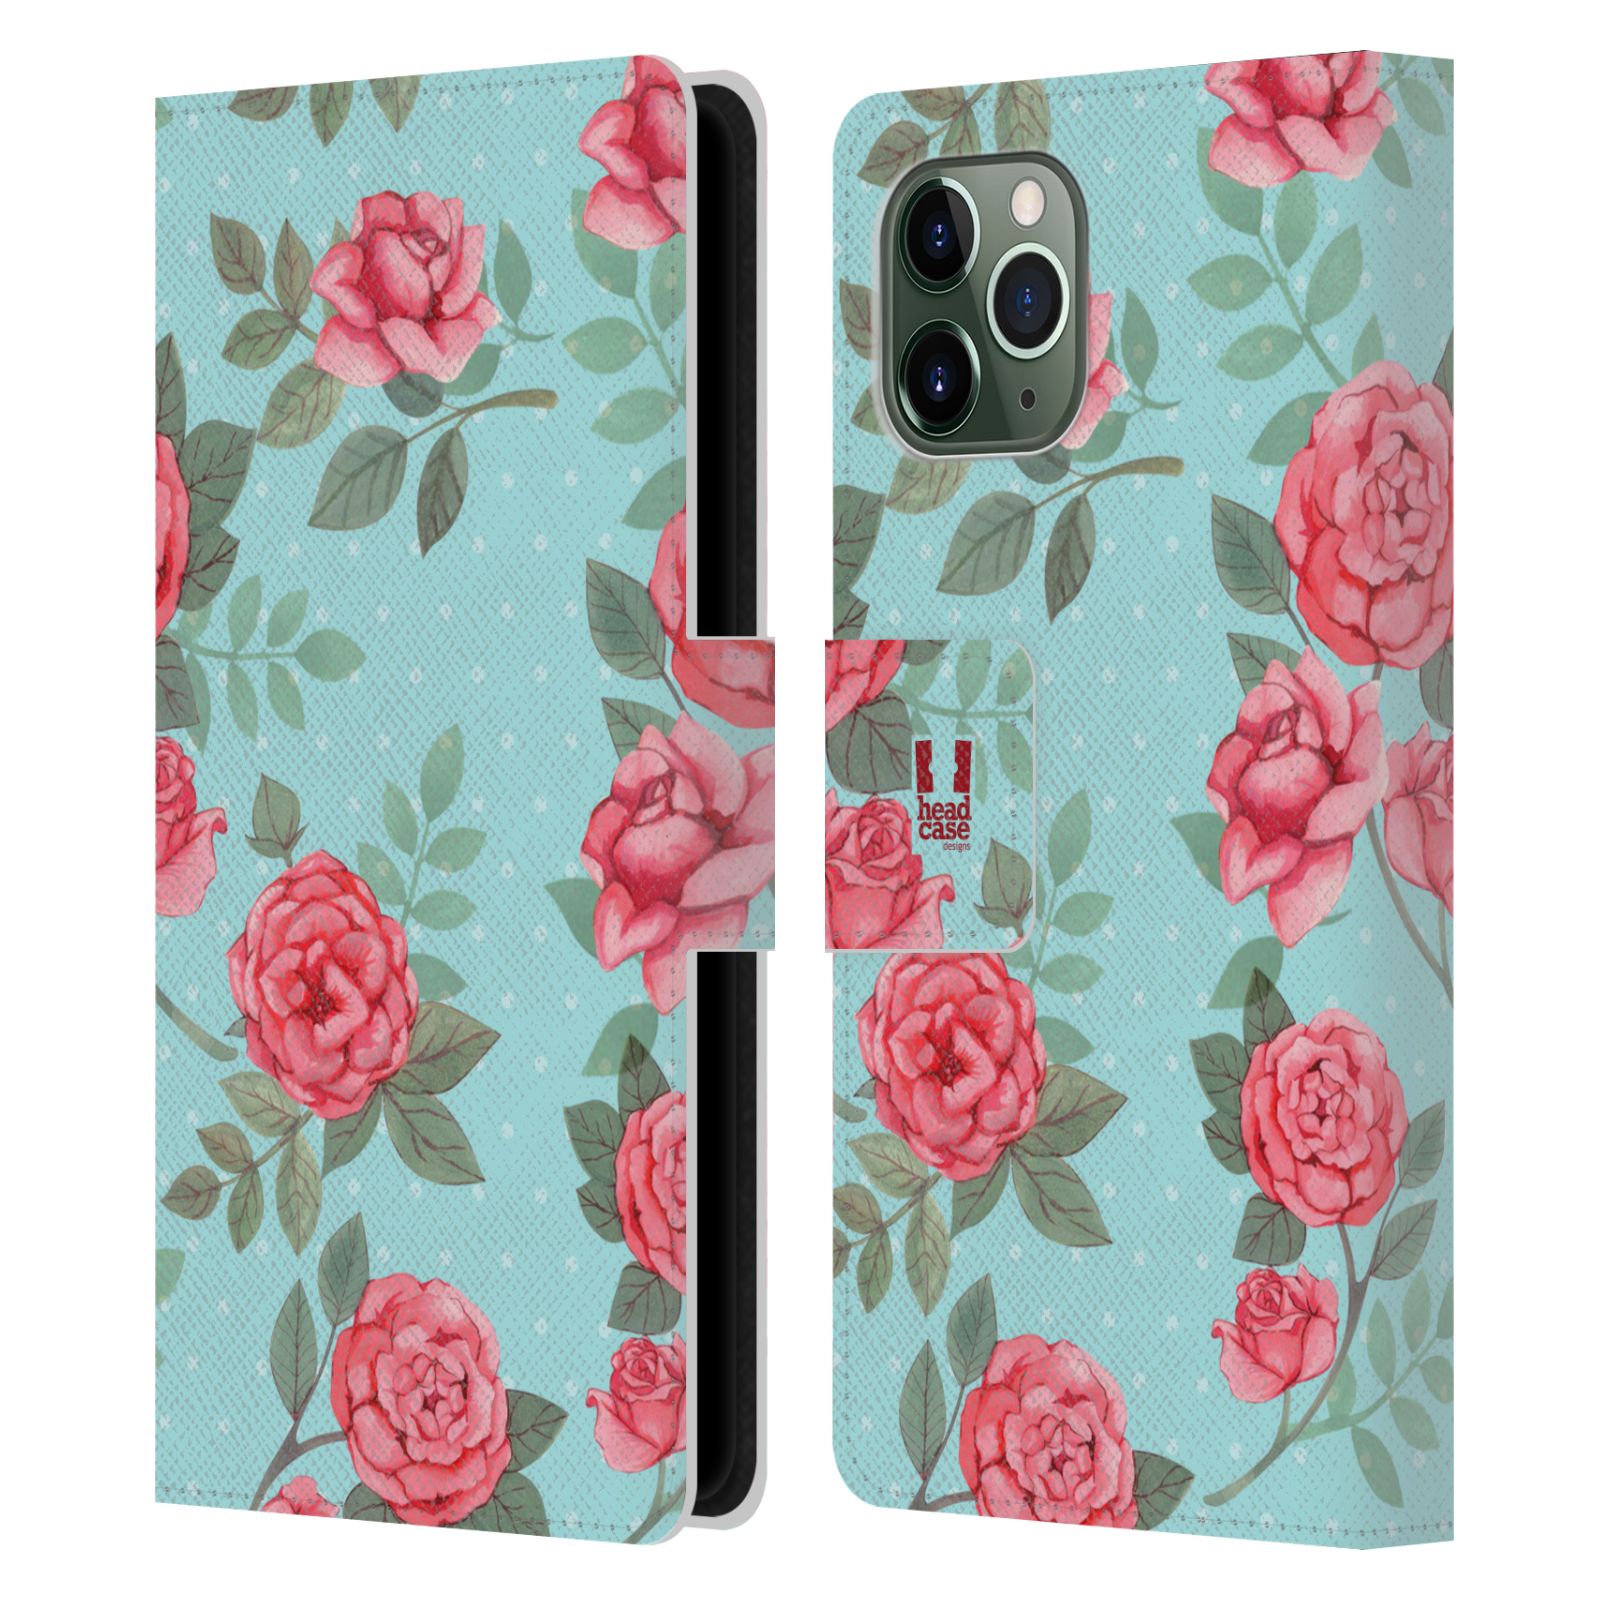 Pouzdro na mobil Apple Iphone 11 PRO romantické květy velké růže modrá a růžová